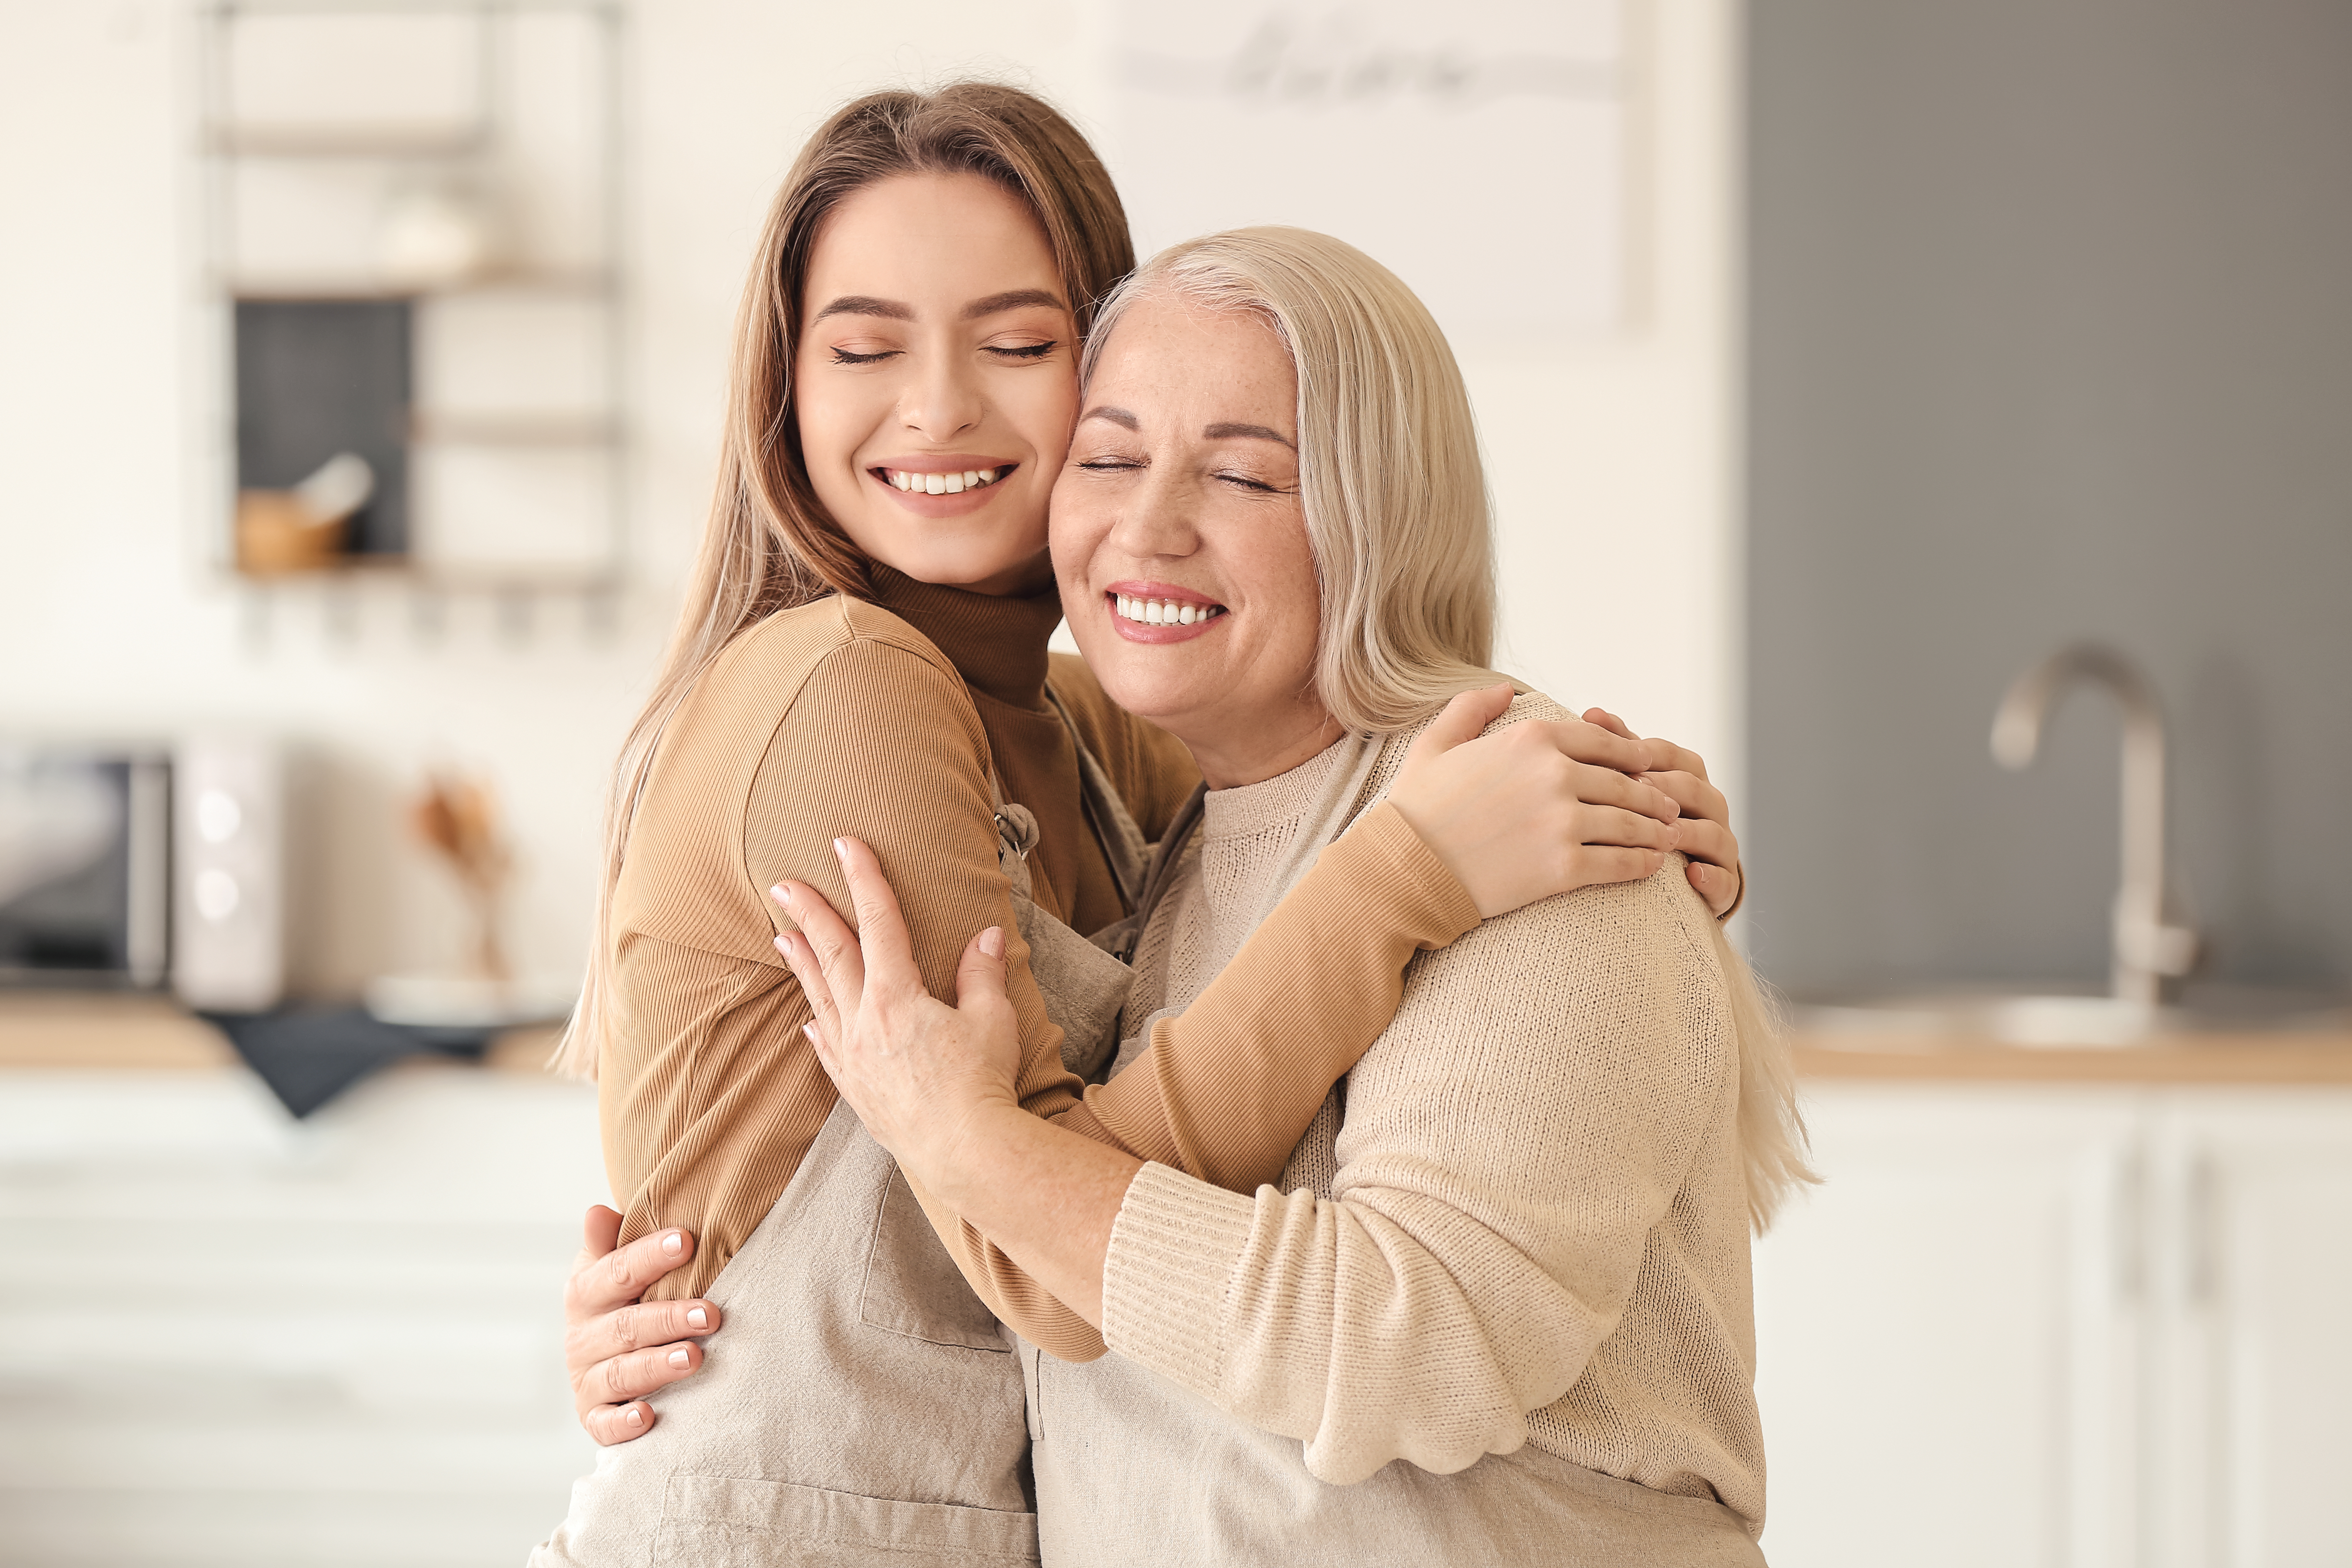 Joven abrazando a su madre | Fuente: Shutterstock